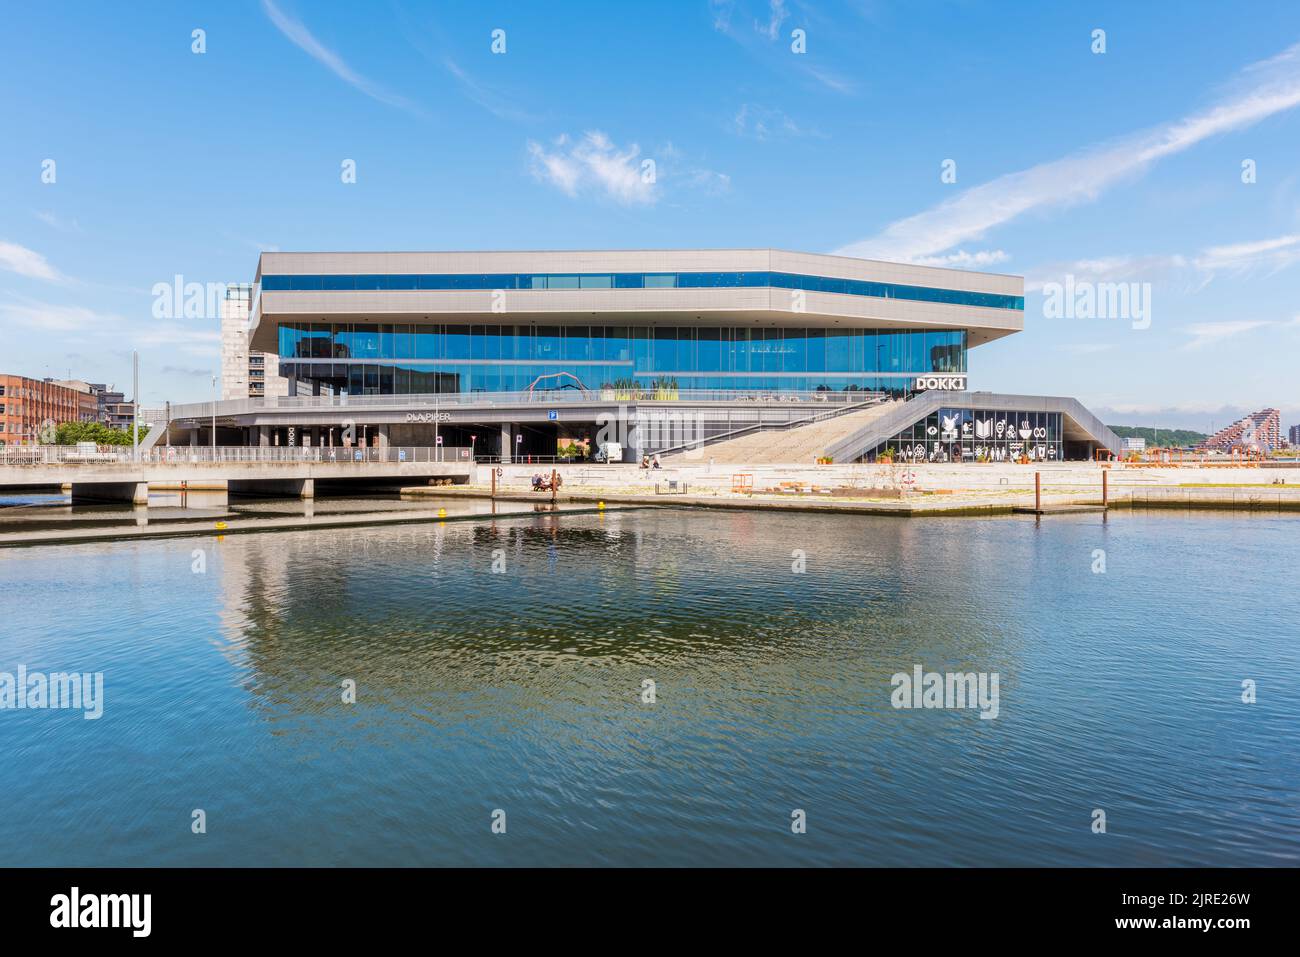 Dokk1 Gebäude in Aarhus, Dänemark. Es ist eine öffentliche Bibliothek und ein Kulturzentrum in der Nähe des Hafens und wurde 2015 fertiggestellt. Stockfoto